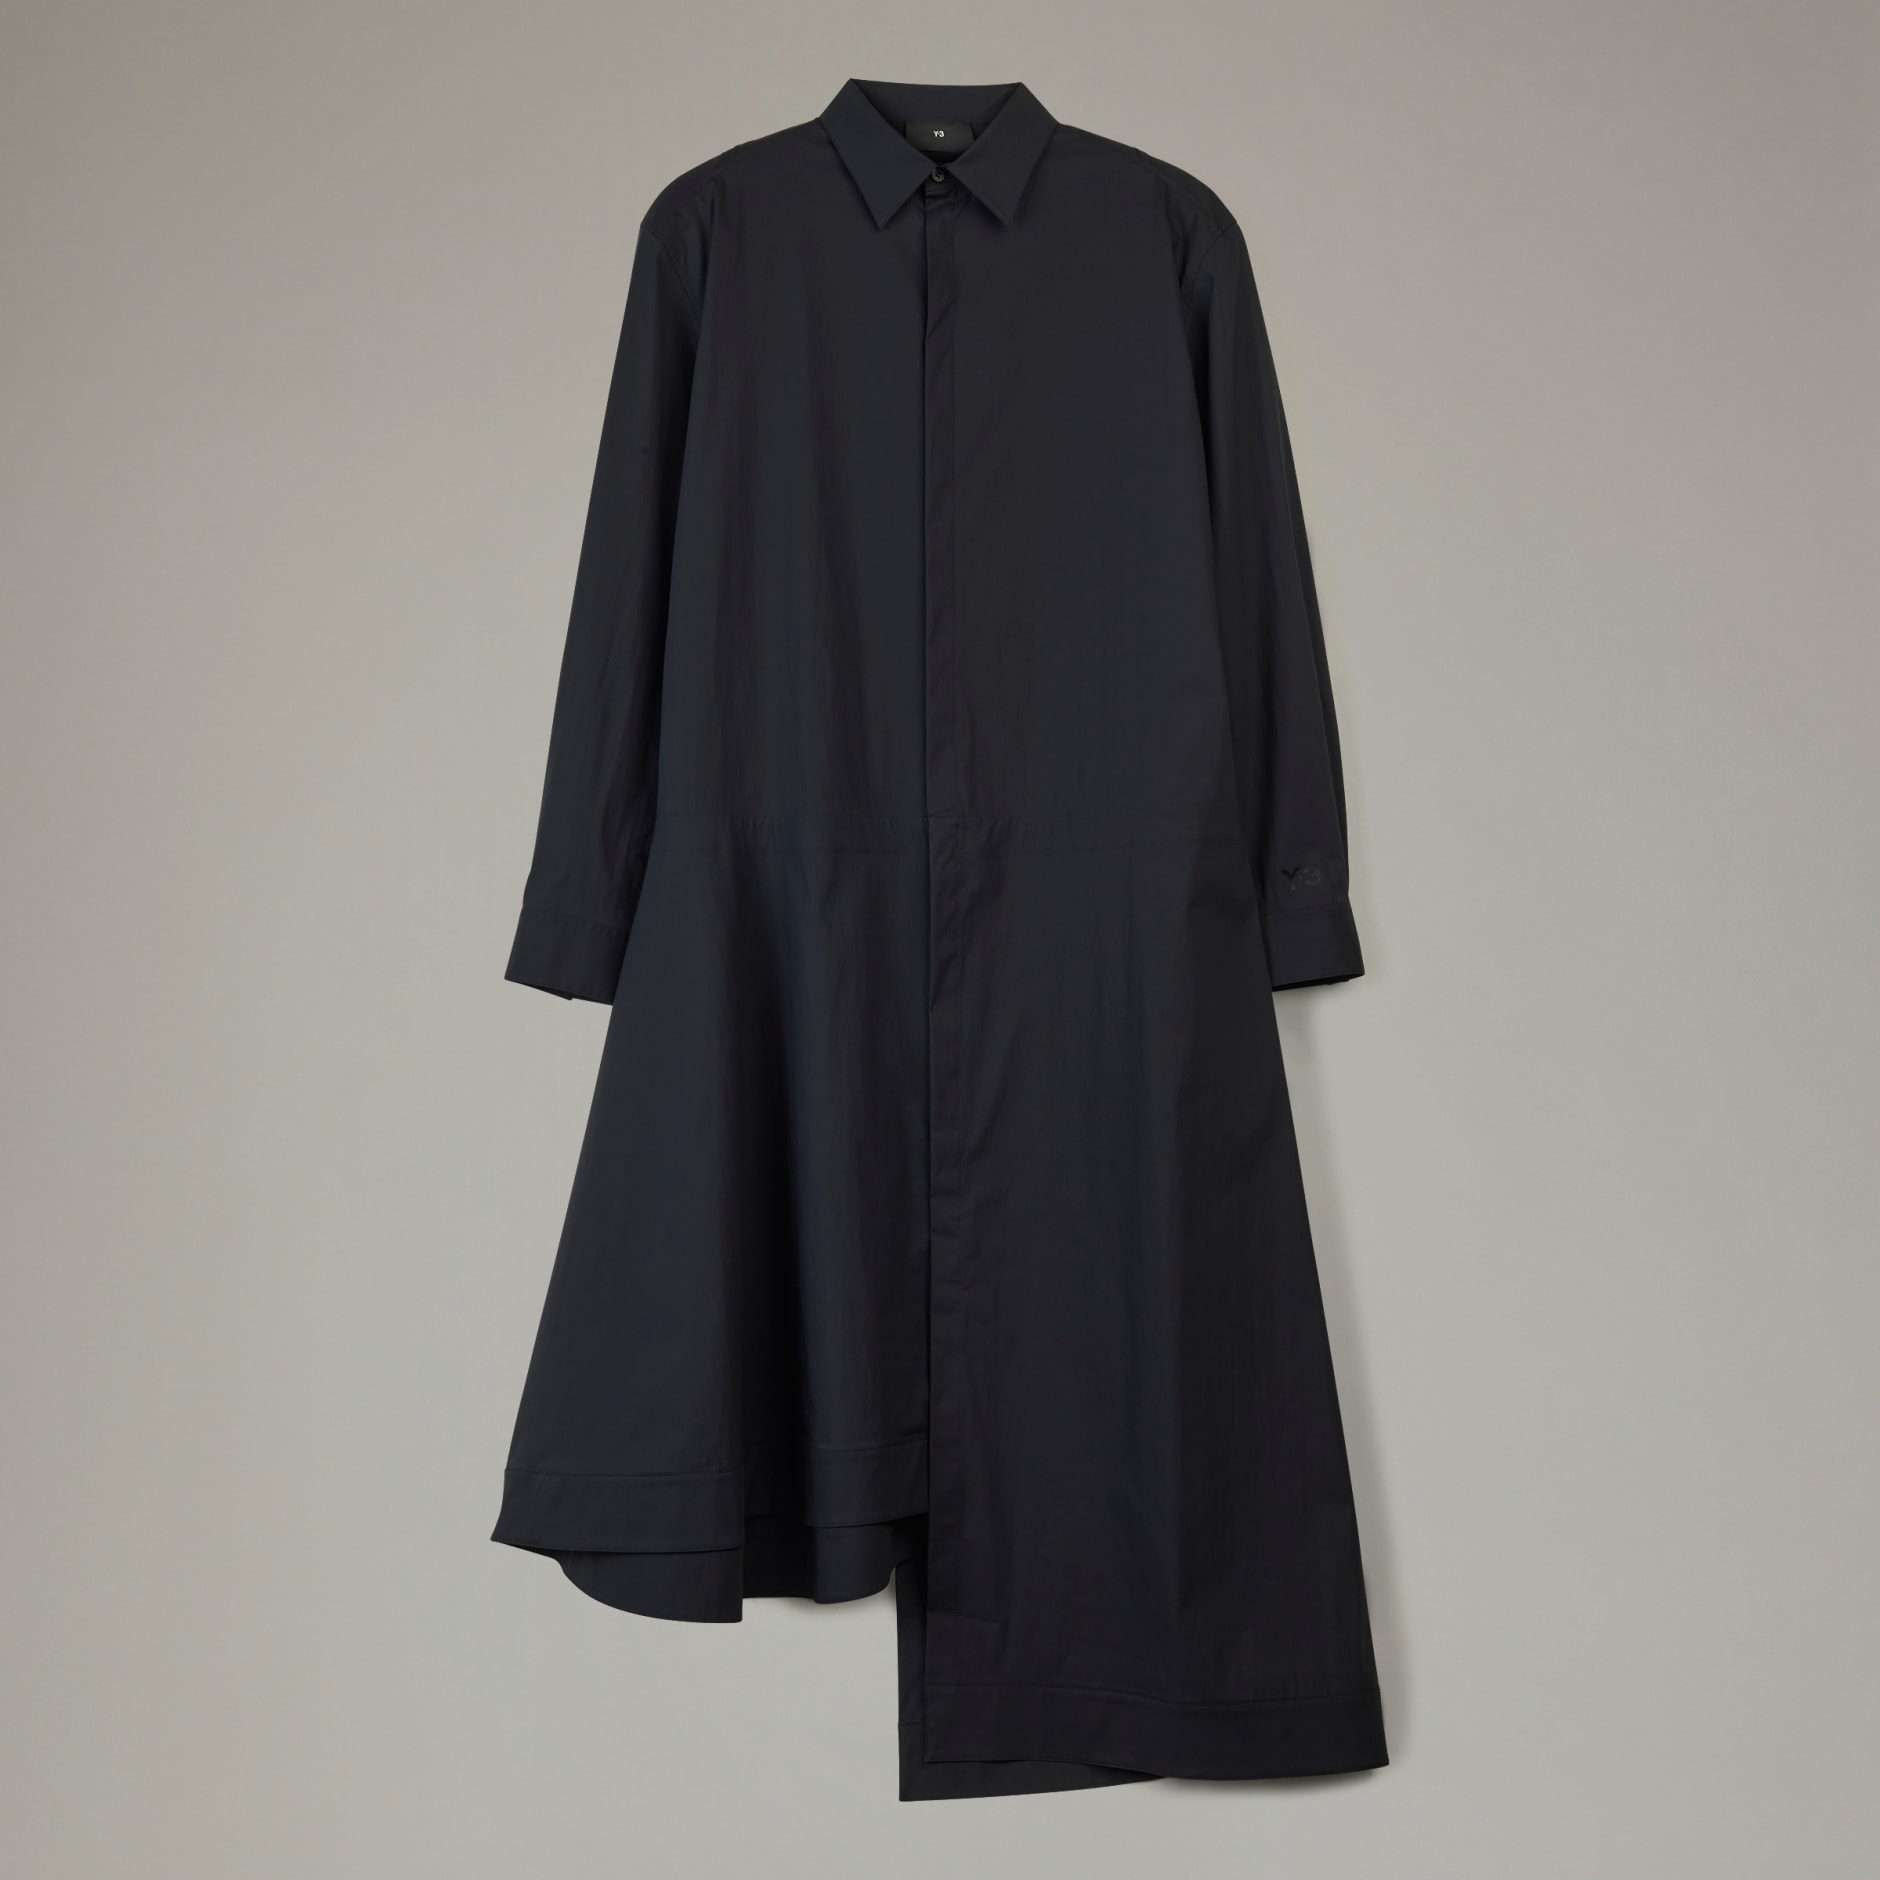 Clothing - Y-3 Shirt Dress - Black | adidas South Africa